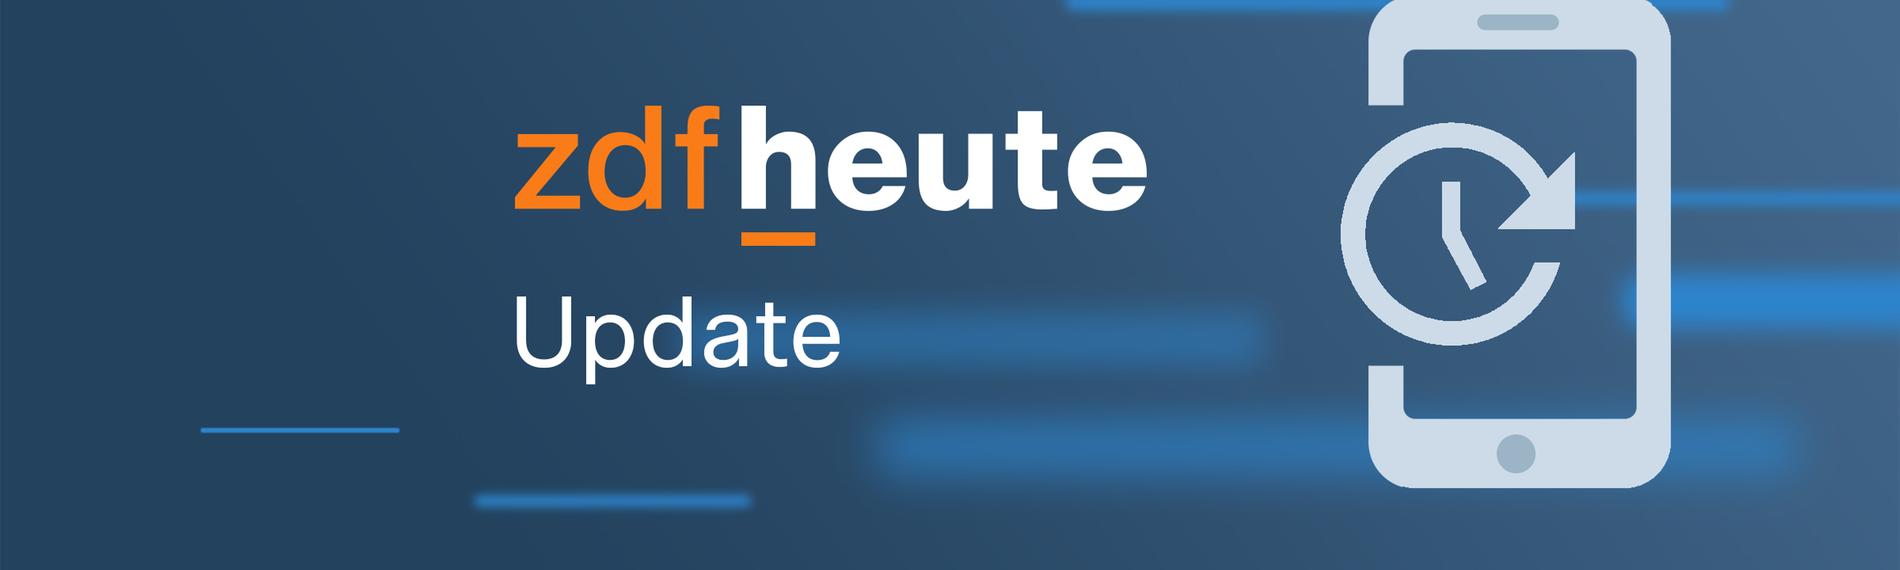 ZDFheute Update